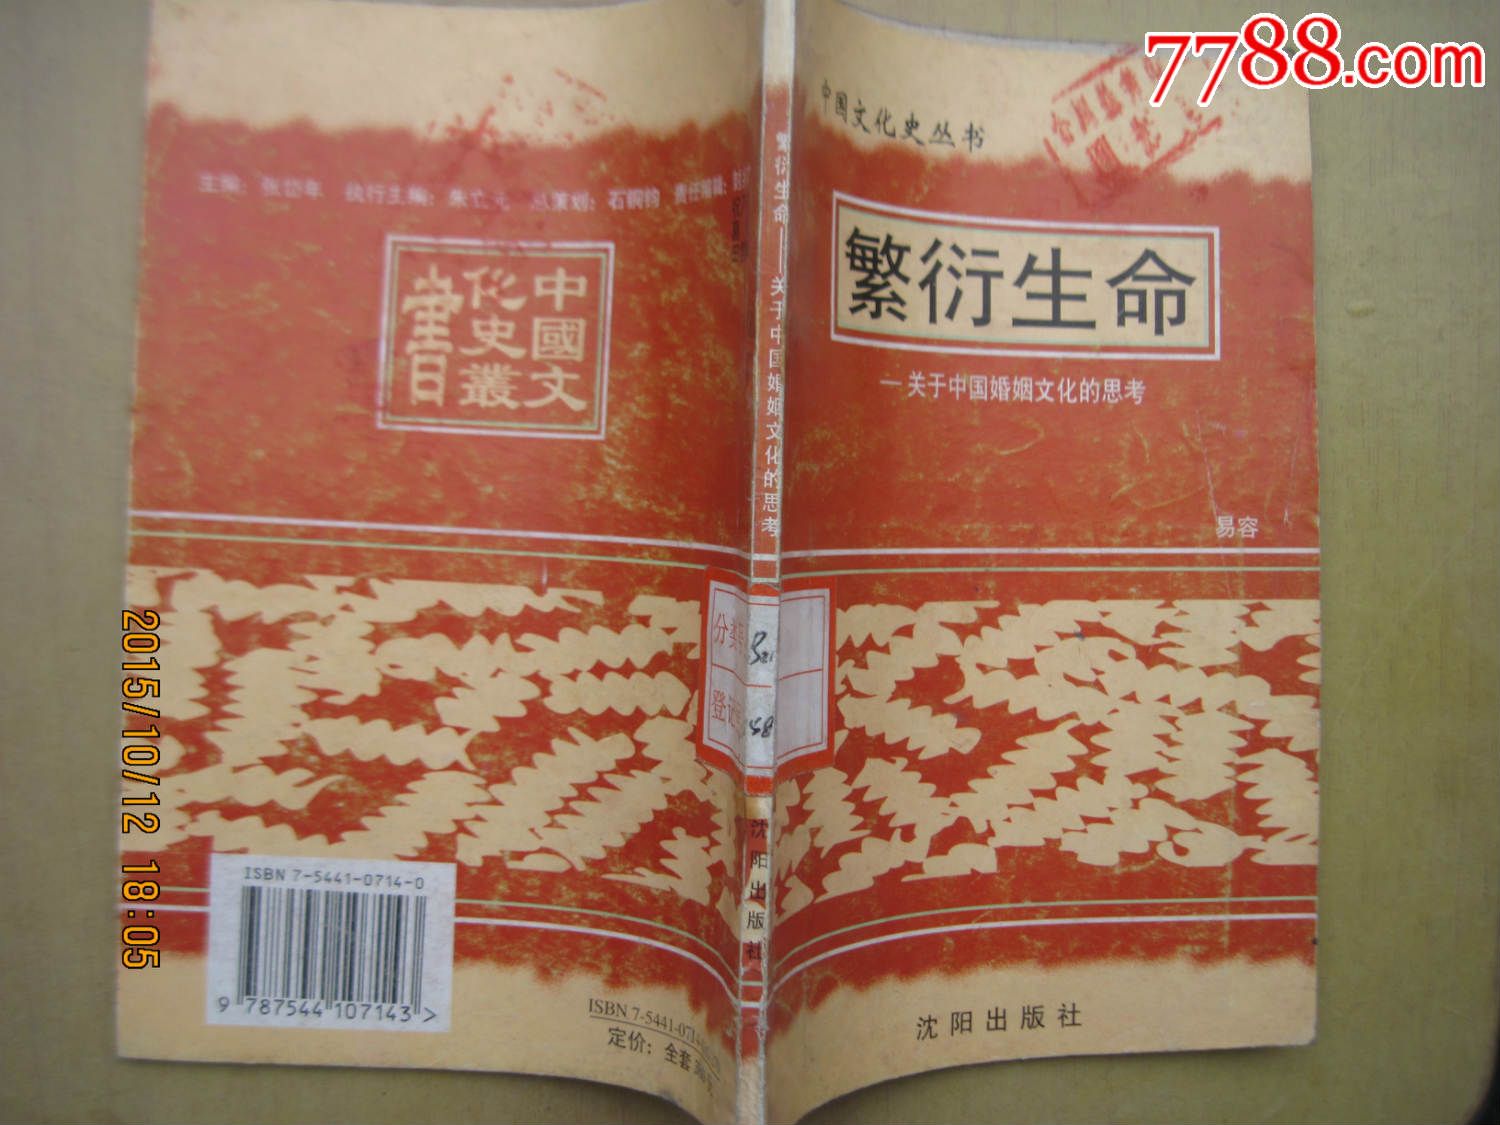 繁衍生命--关于中国婚姻文化的思考-se326665